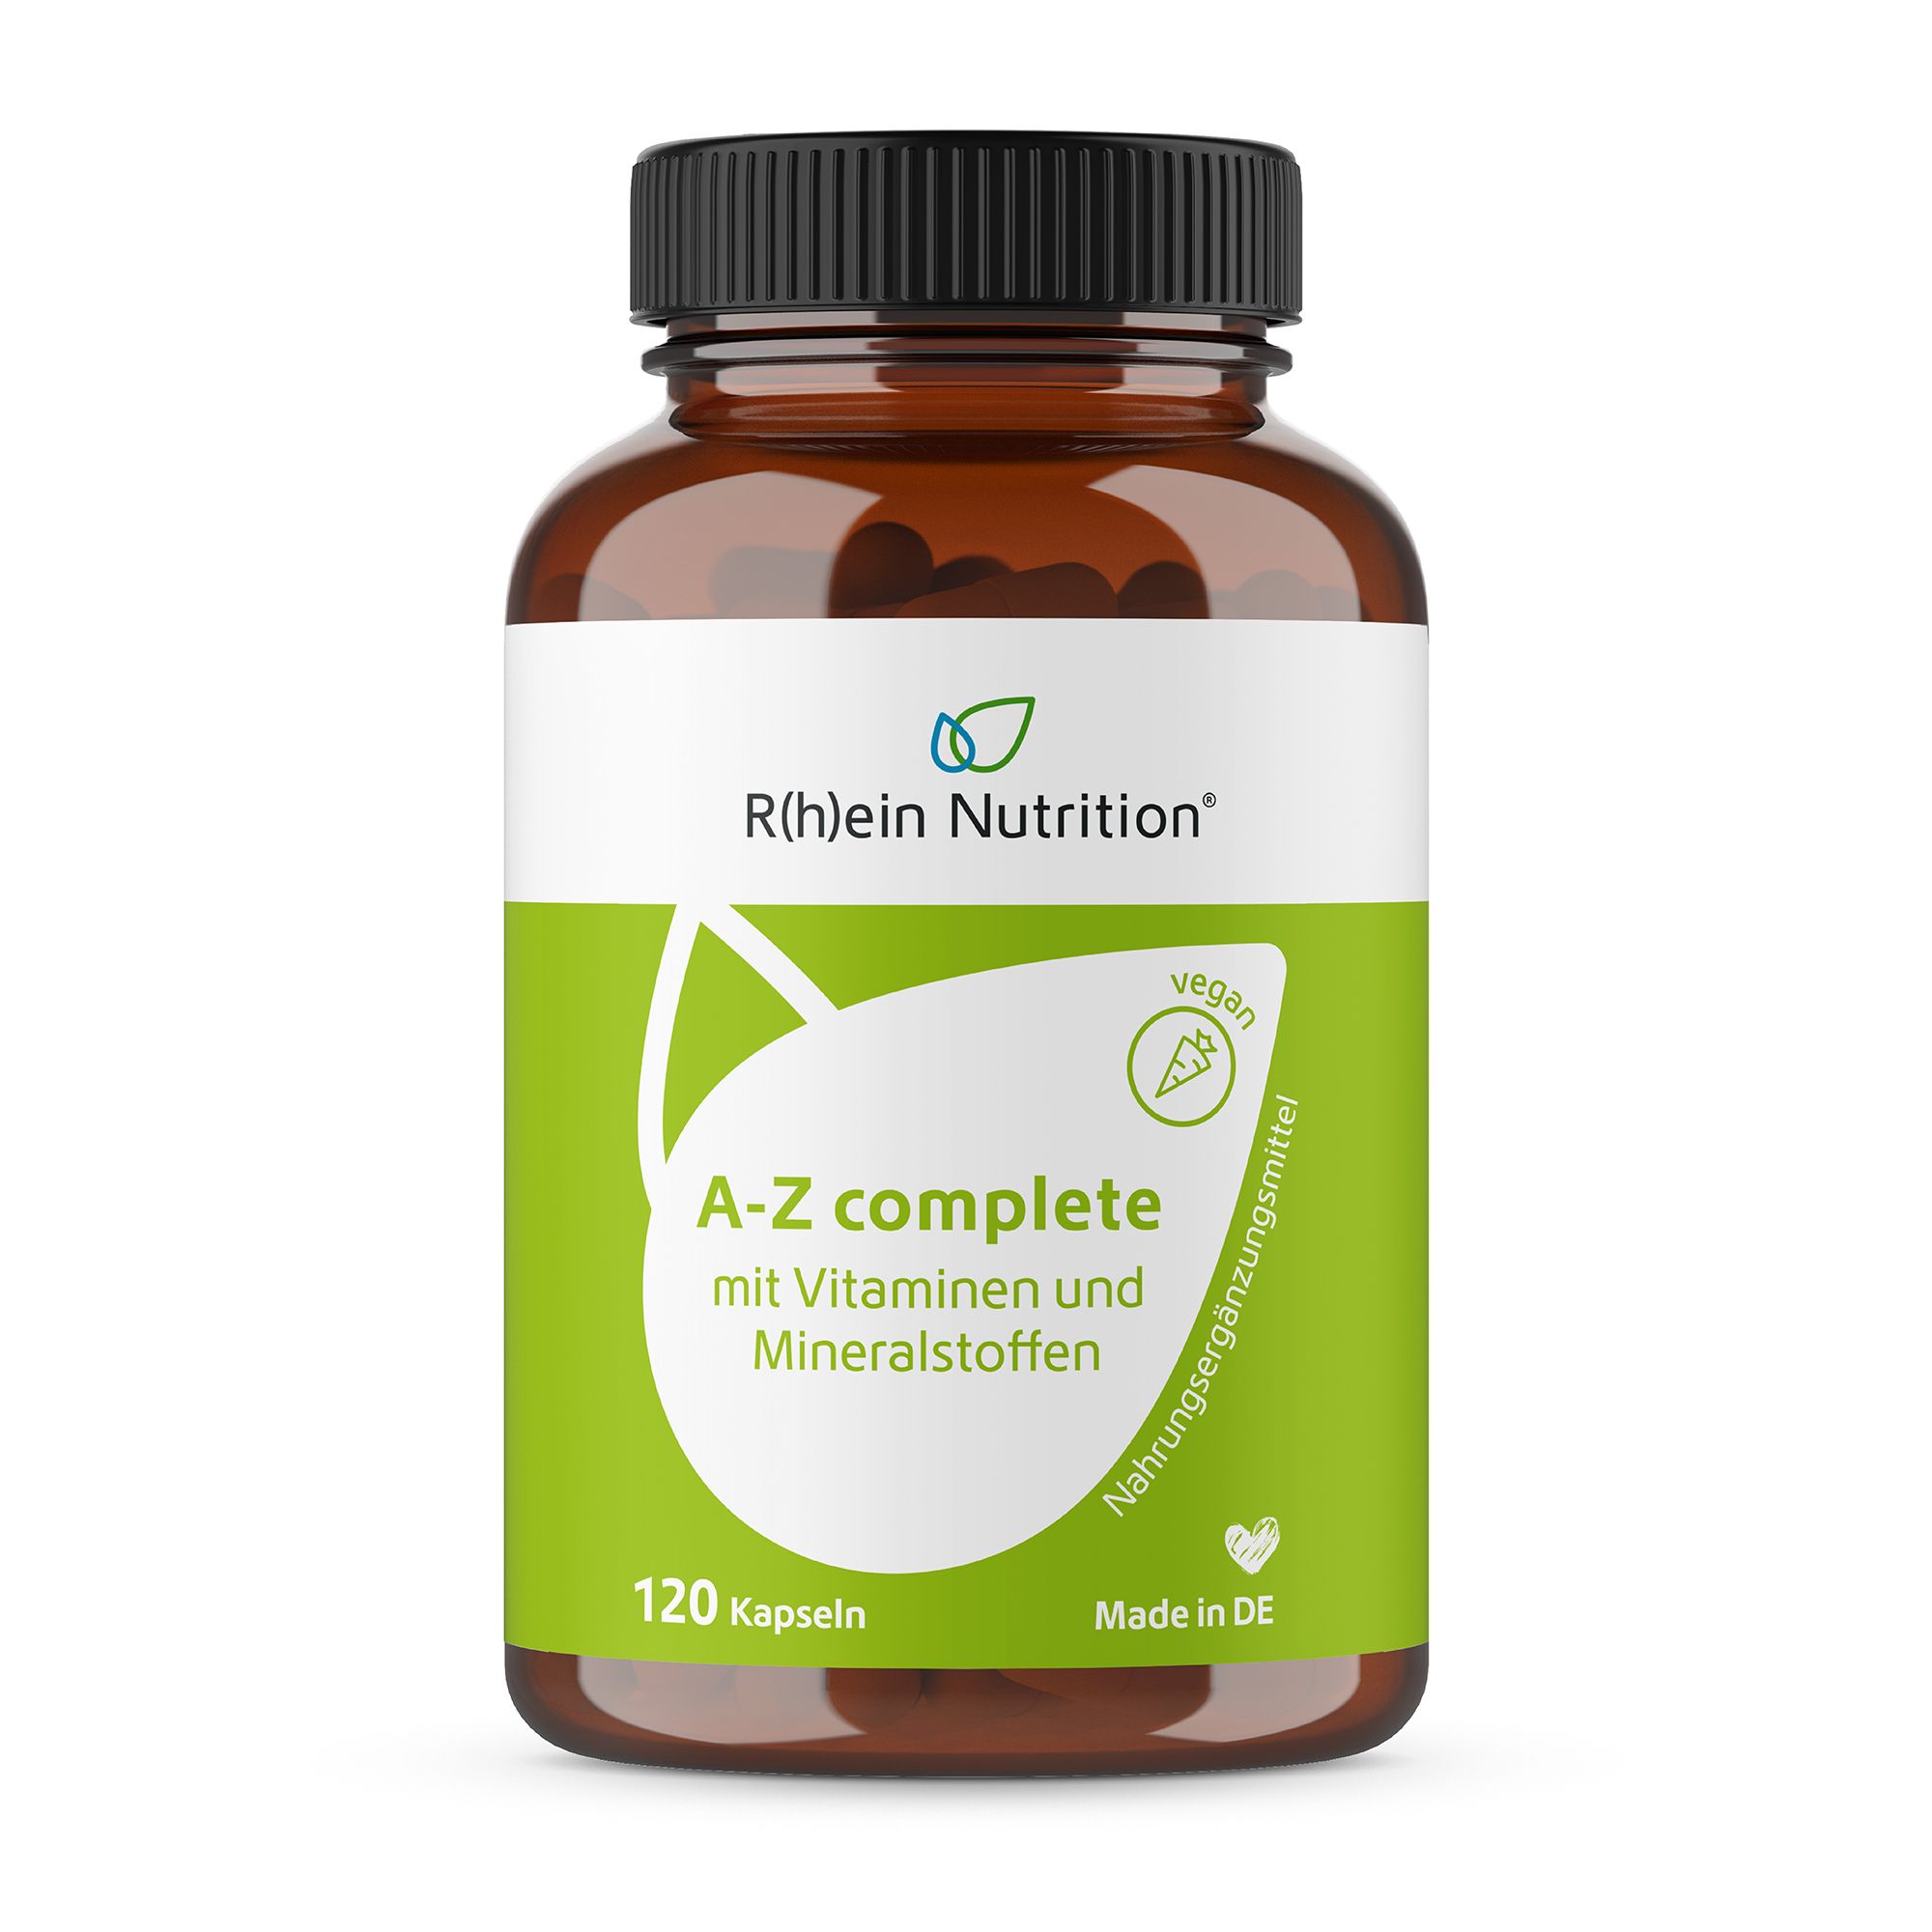 R(h)ein Nutrition A-Z complete mit Vitaminen und Mineralstoffen